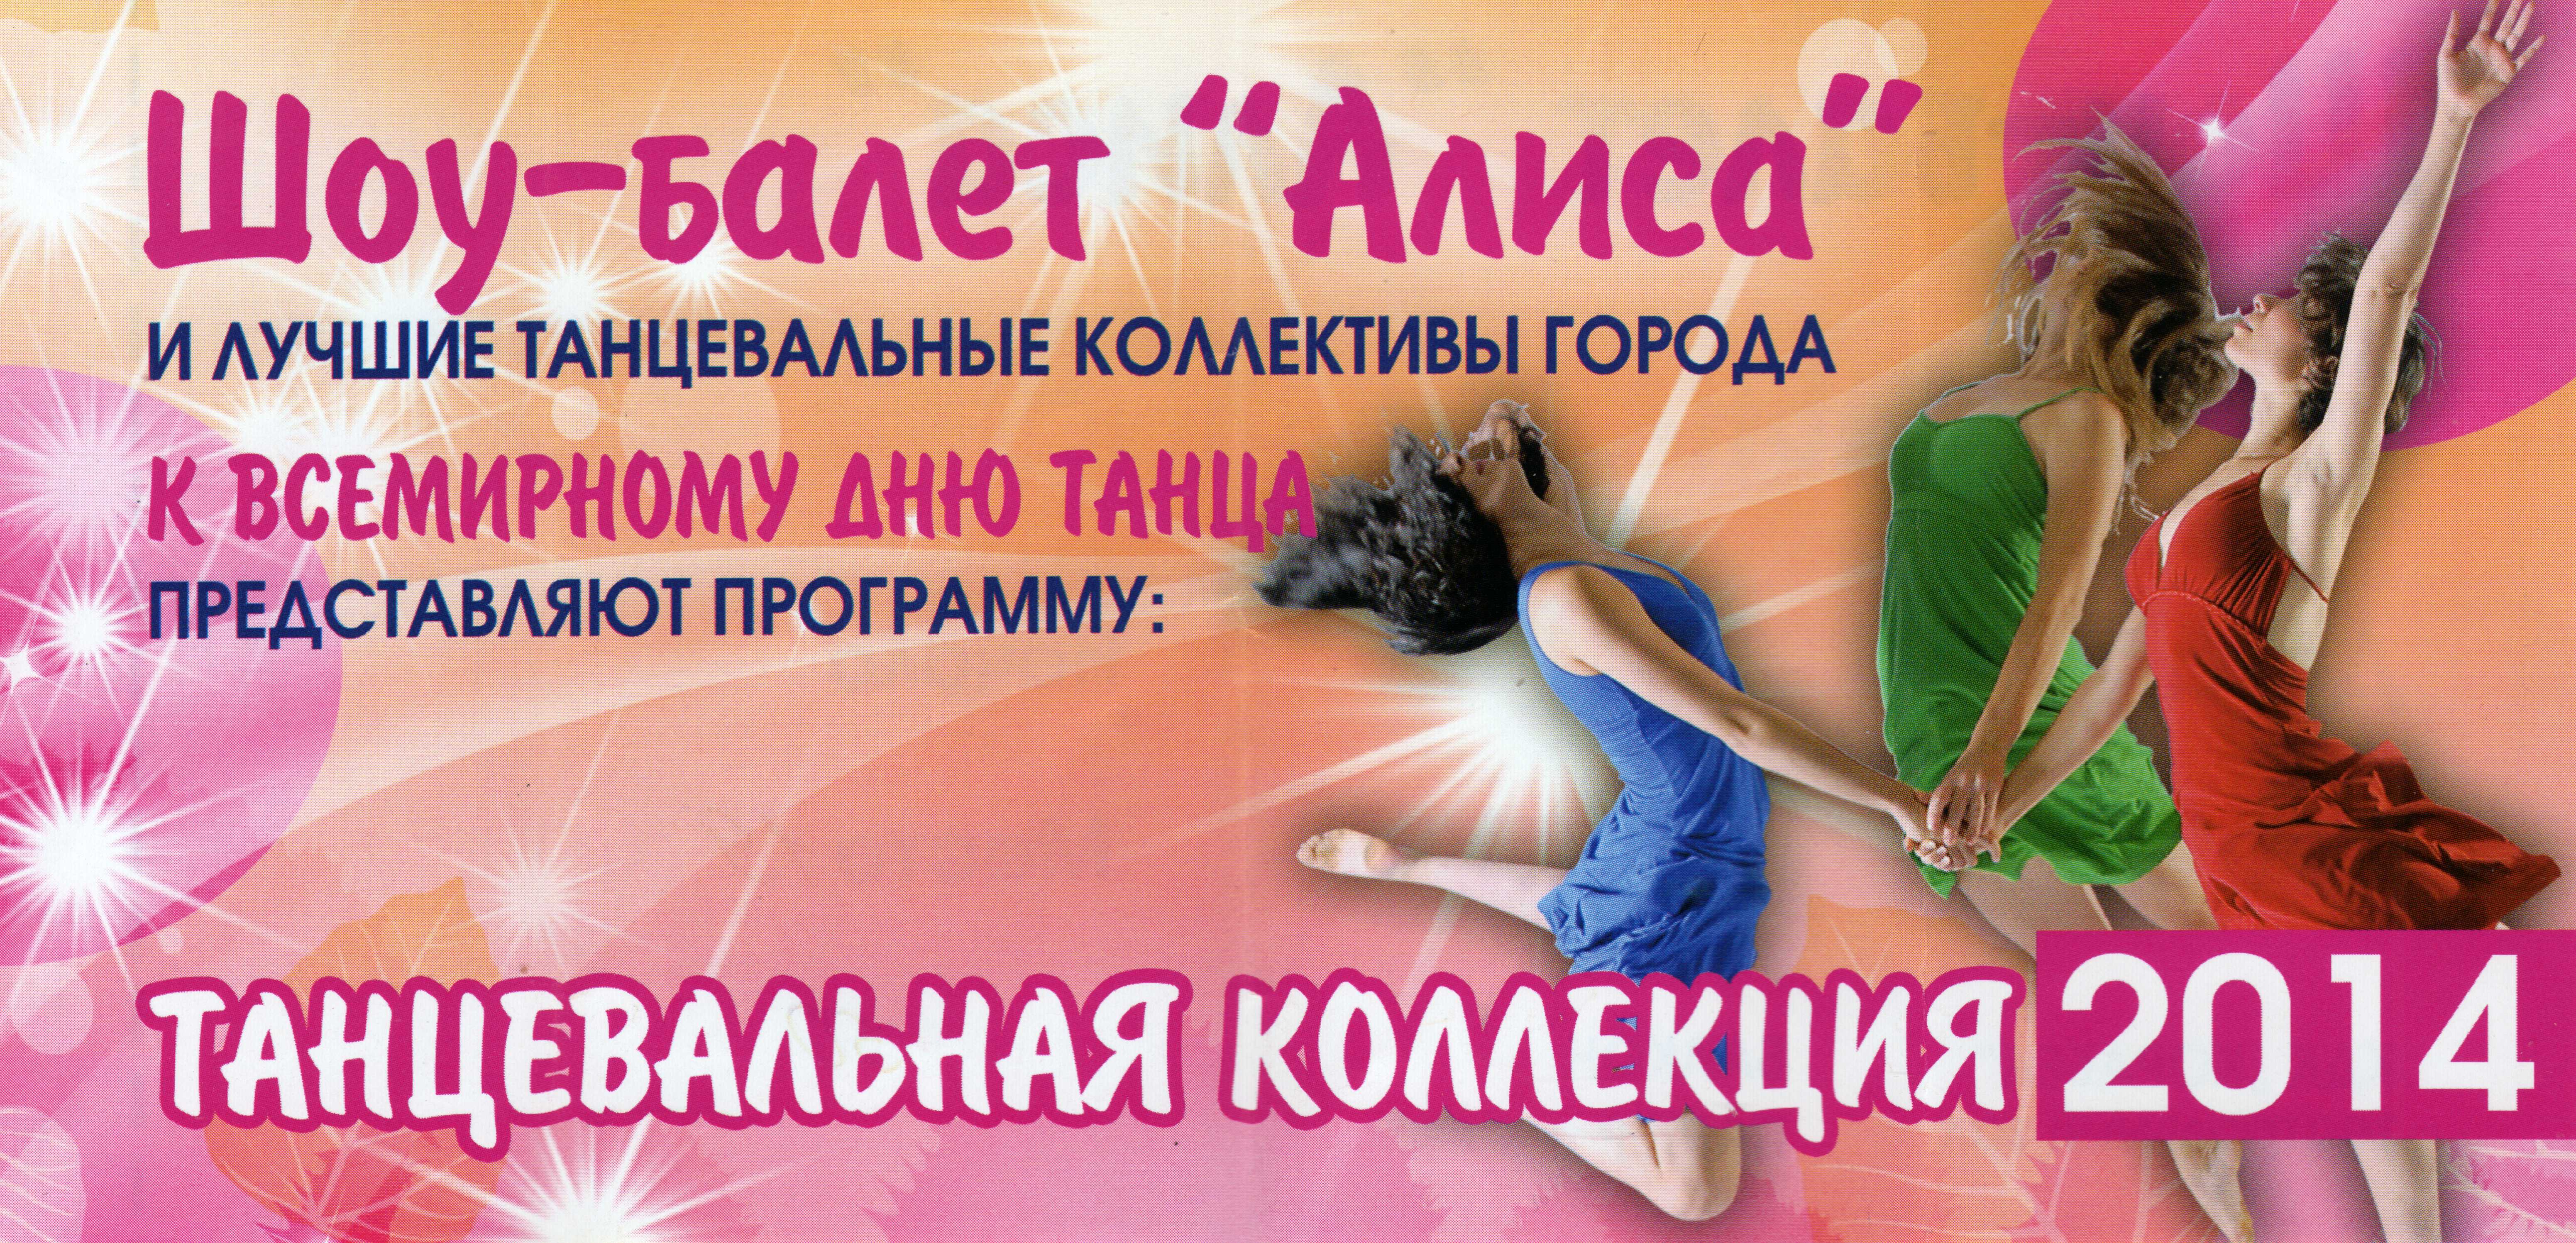 Шоу-балет Алиса Танцевальная коллекция 2014 Дк Корабел